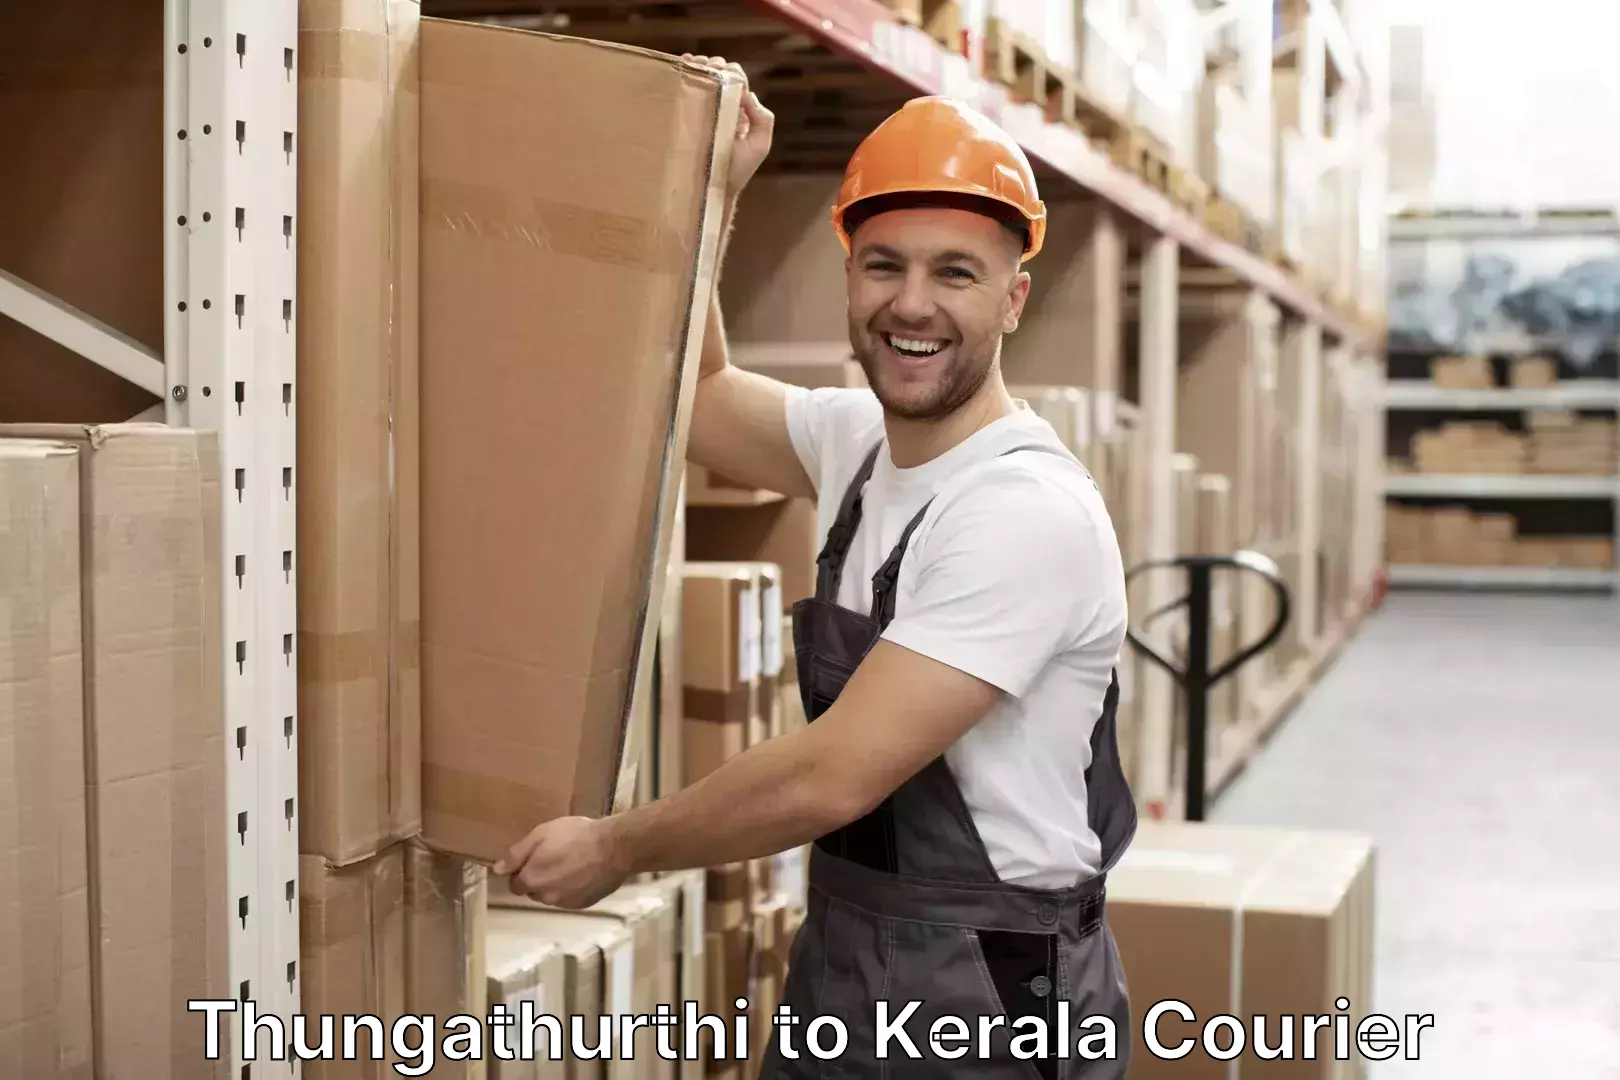 Luggage delivery operations Thungathurthi to Alathur Malabar